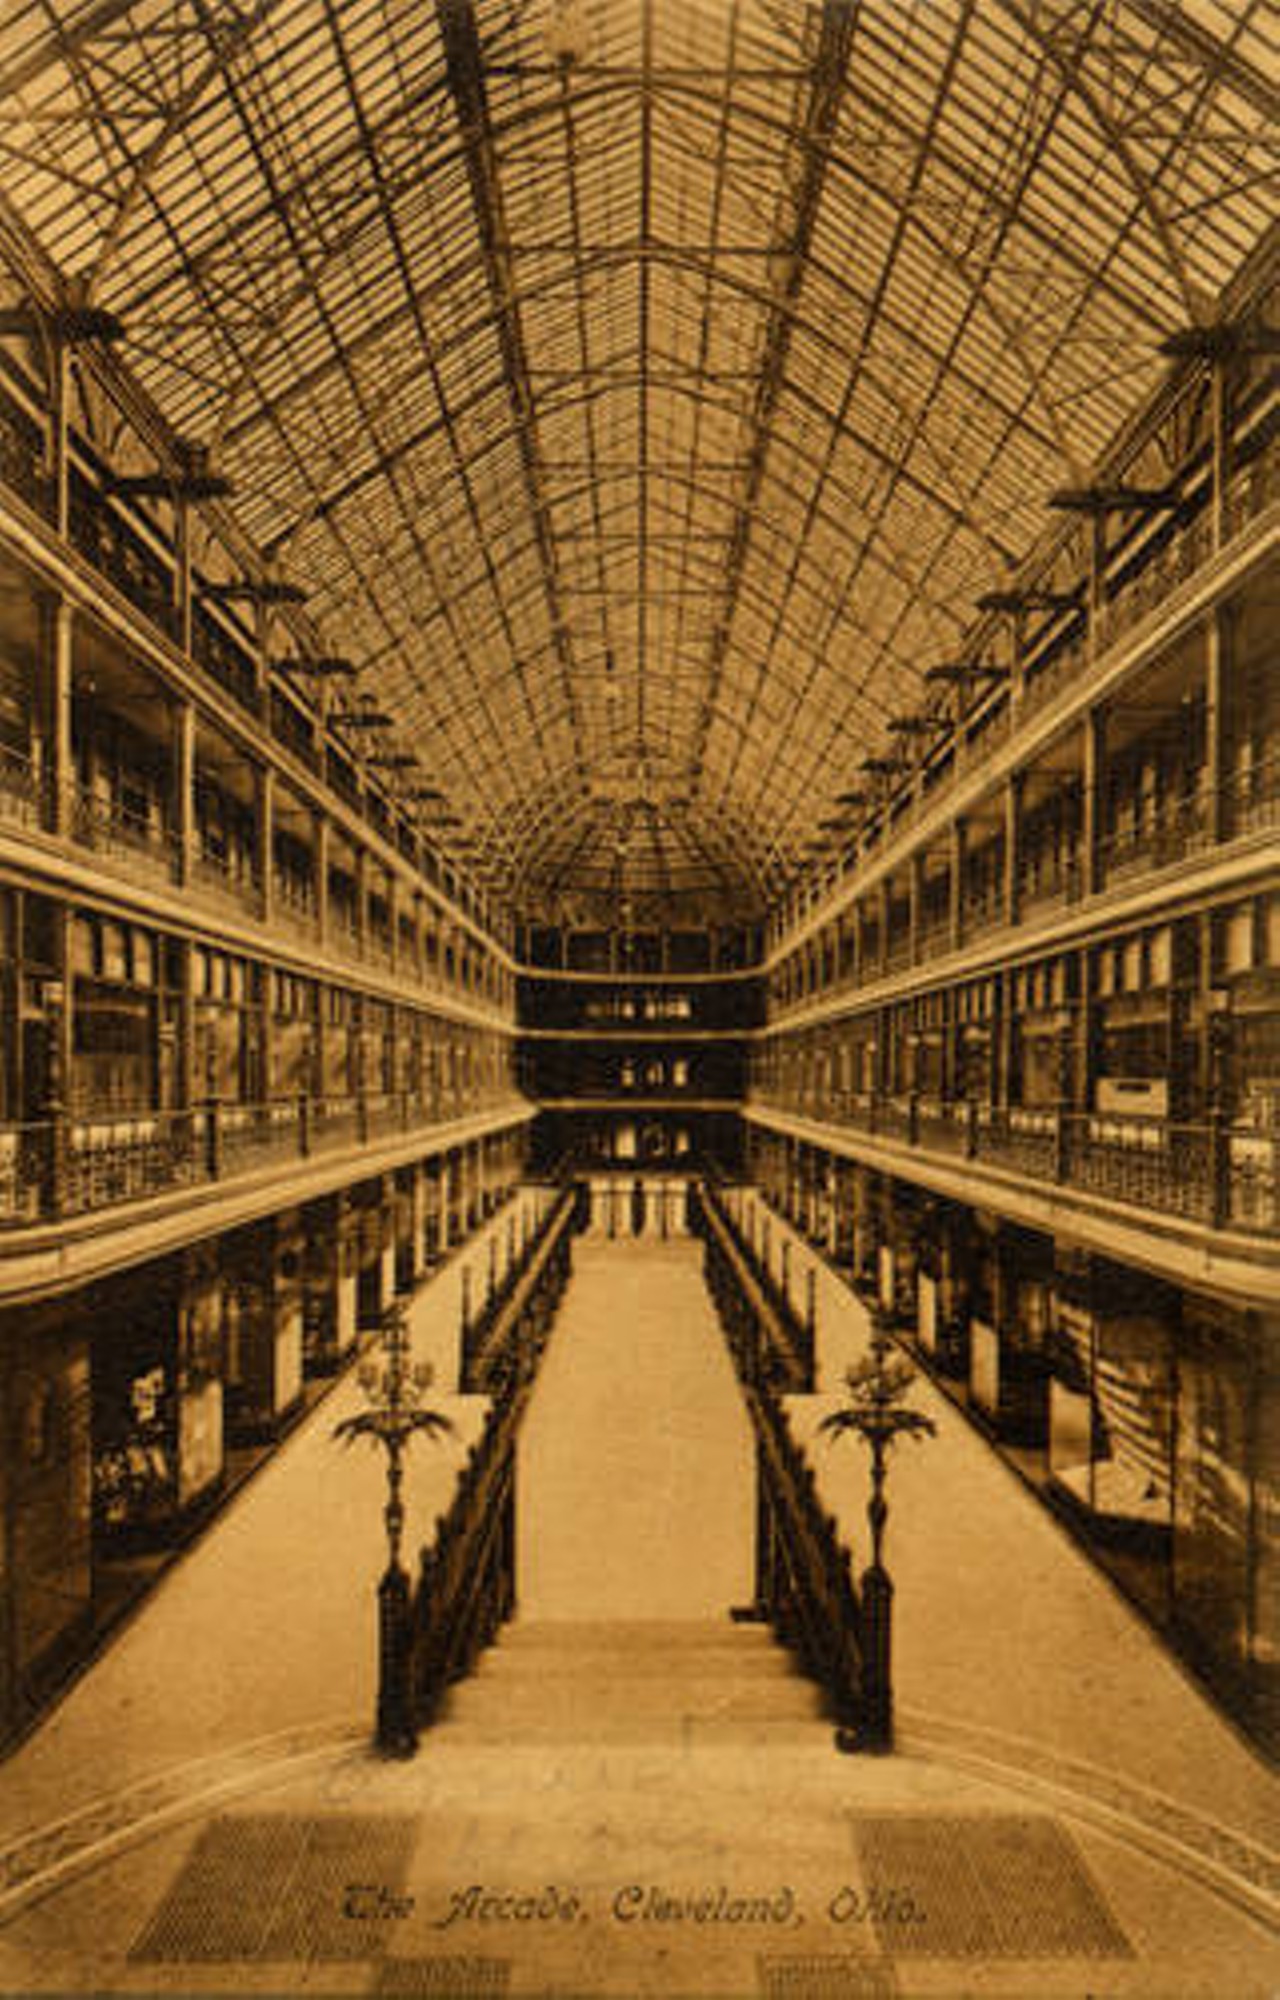 The Cleveland Arcade, circa 1900